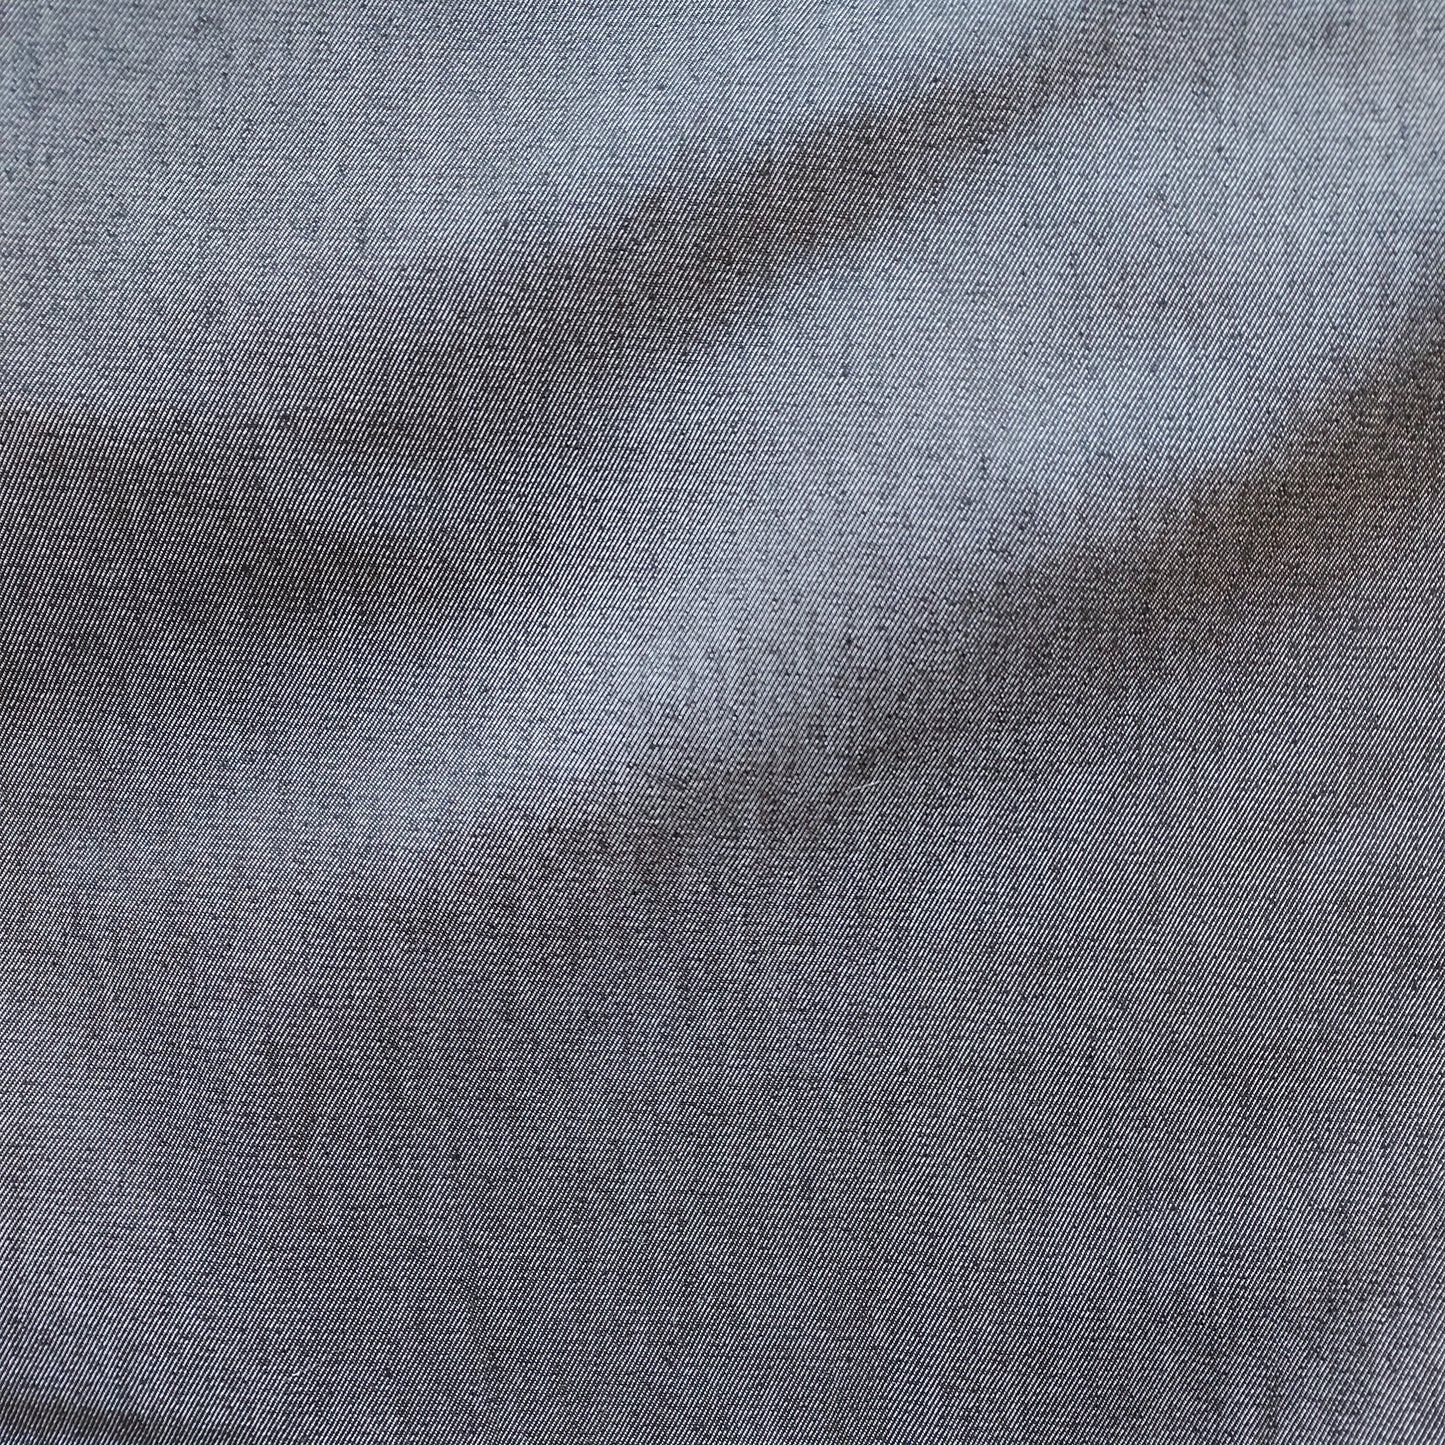 Yarn Dyed Stretch Denim Fabric - Various Shades